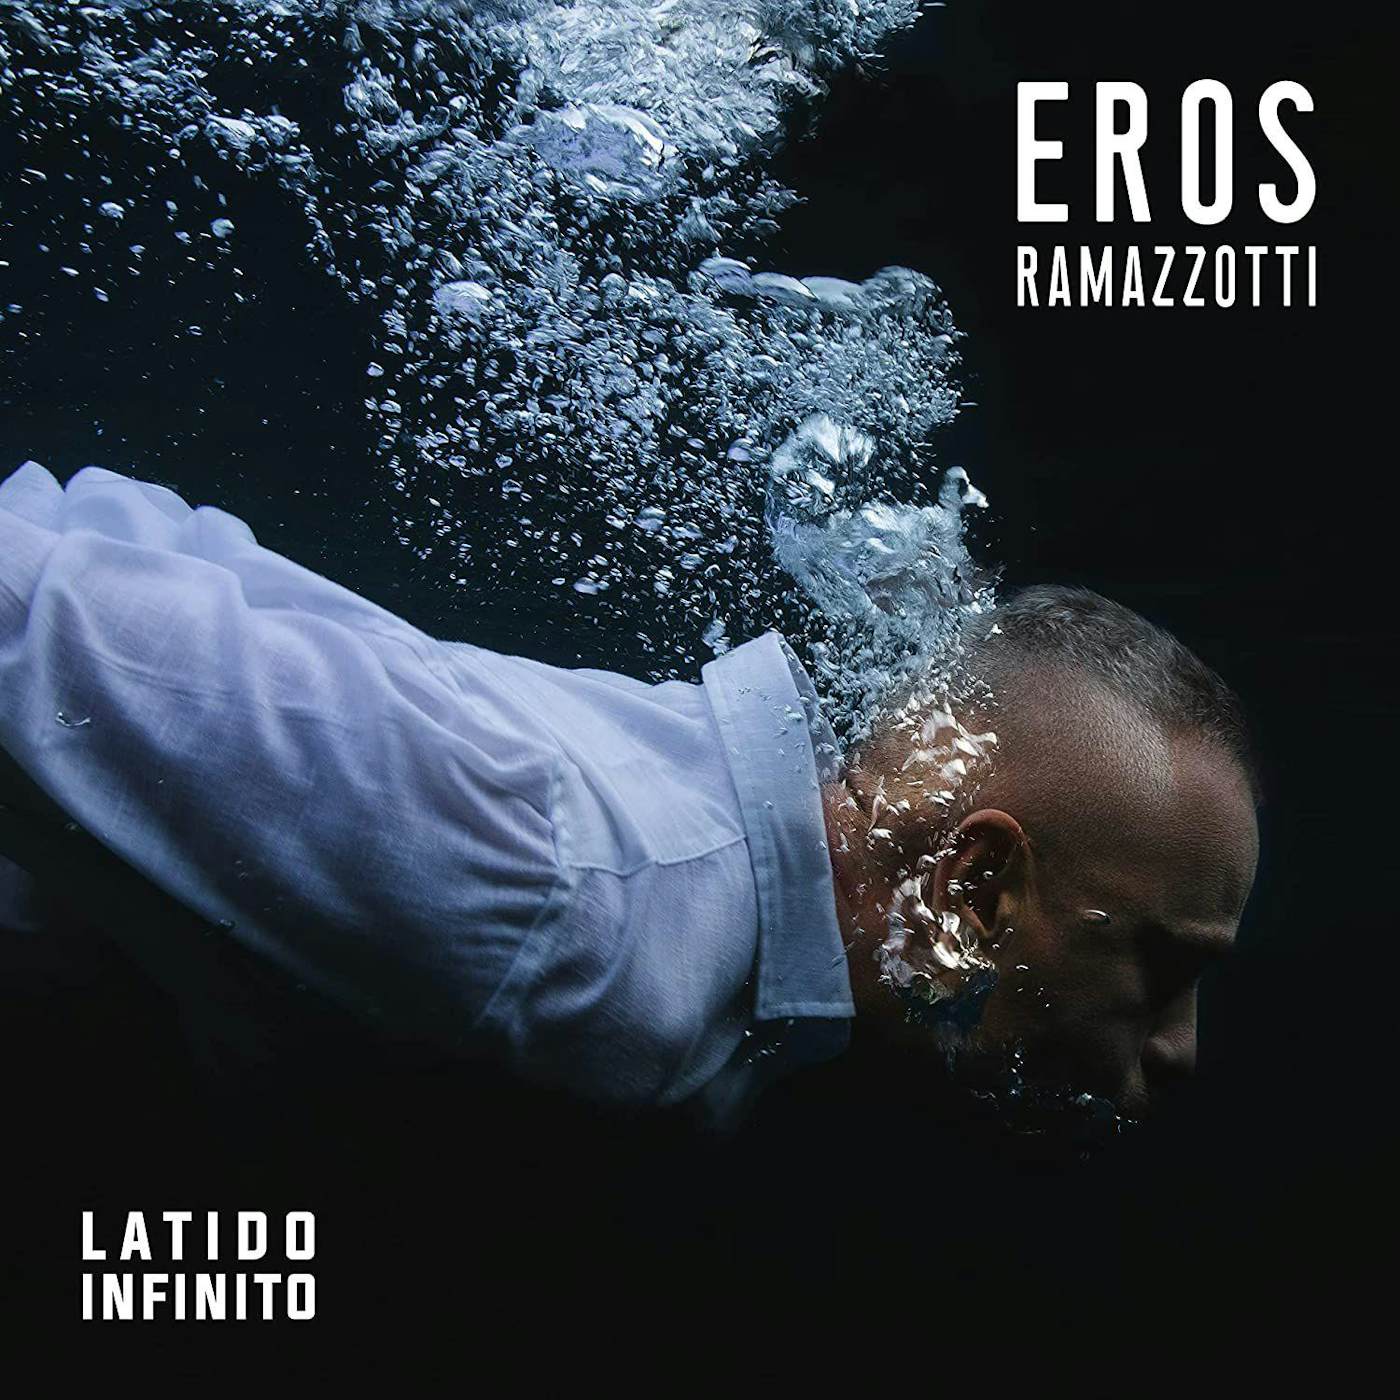 Eros Ramazzotti Latido Infinito Vinyl Record